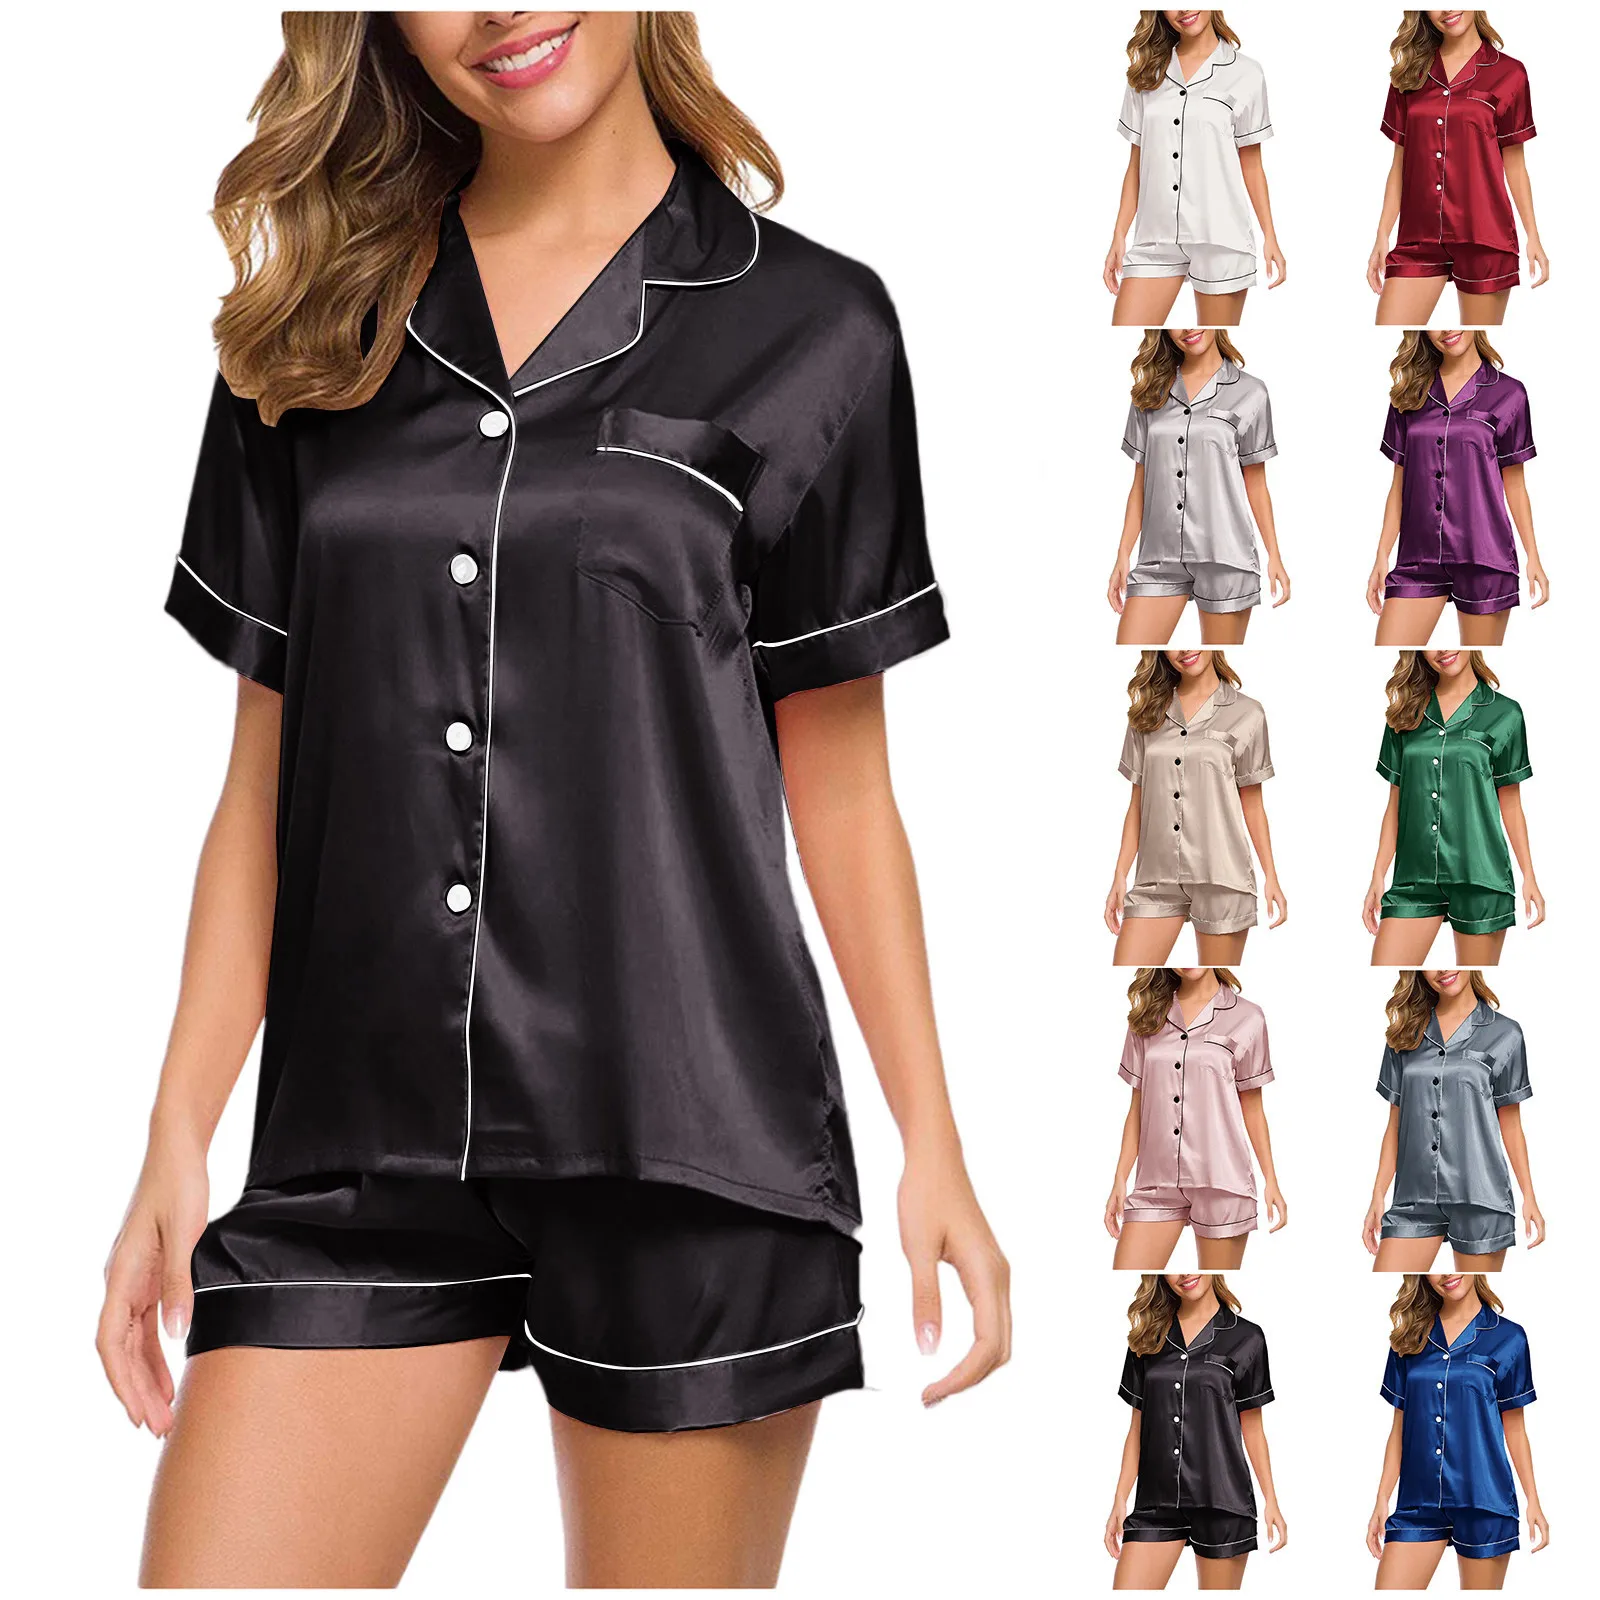 

Шелковая пижама для женщин домашний костюм рубашка с коротким рукавом + шорты пижамный комплект атласная ночная рубашка одежда для сна ночн...